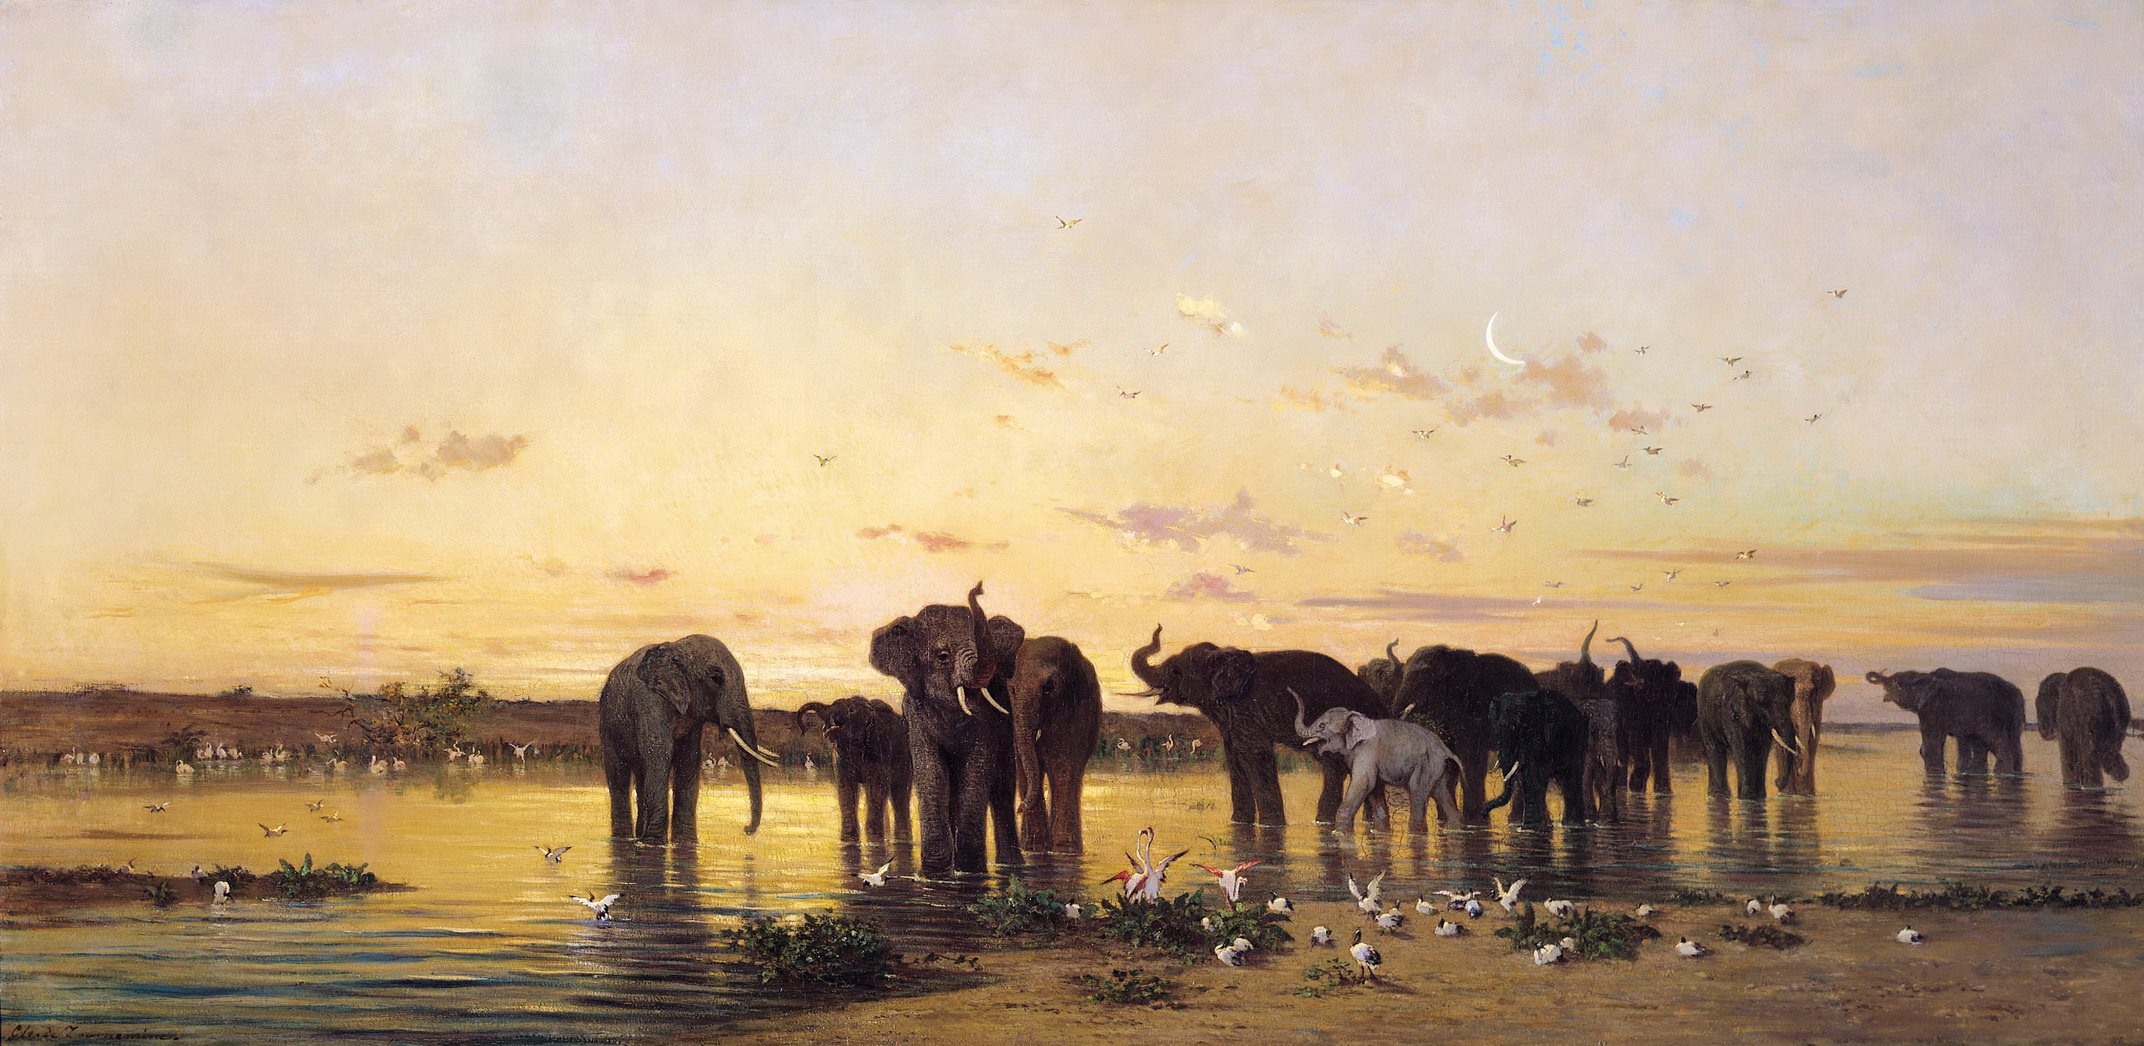 Шарль Эмиль де Турнемин. Африканские слоны